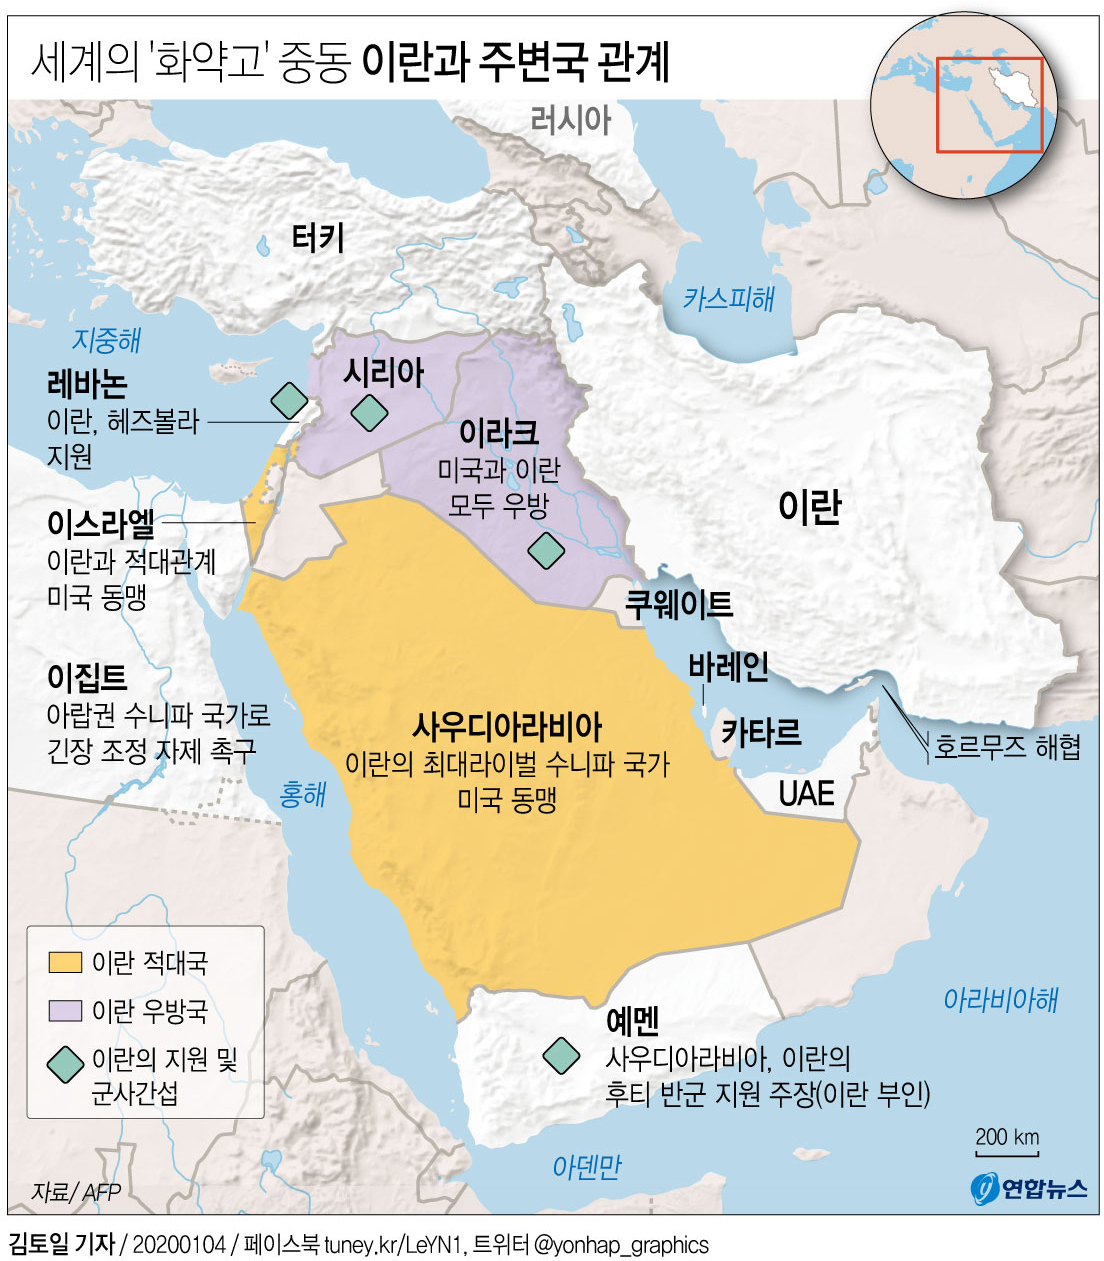 [그래픽] 세계 화약고 중동, 이란과 주변국 관계